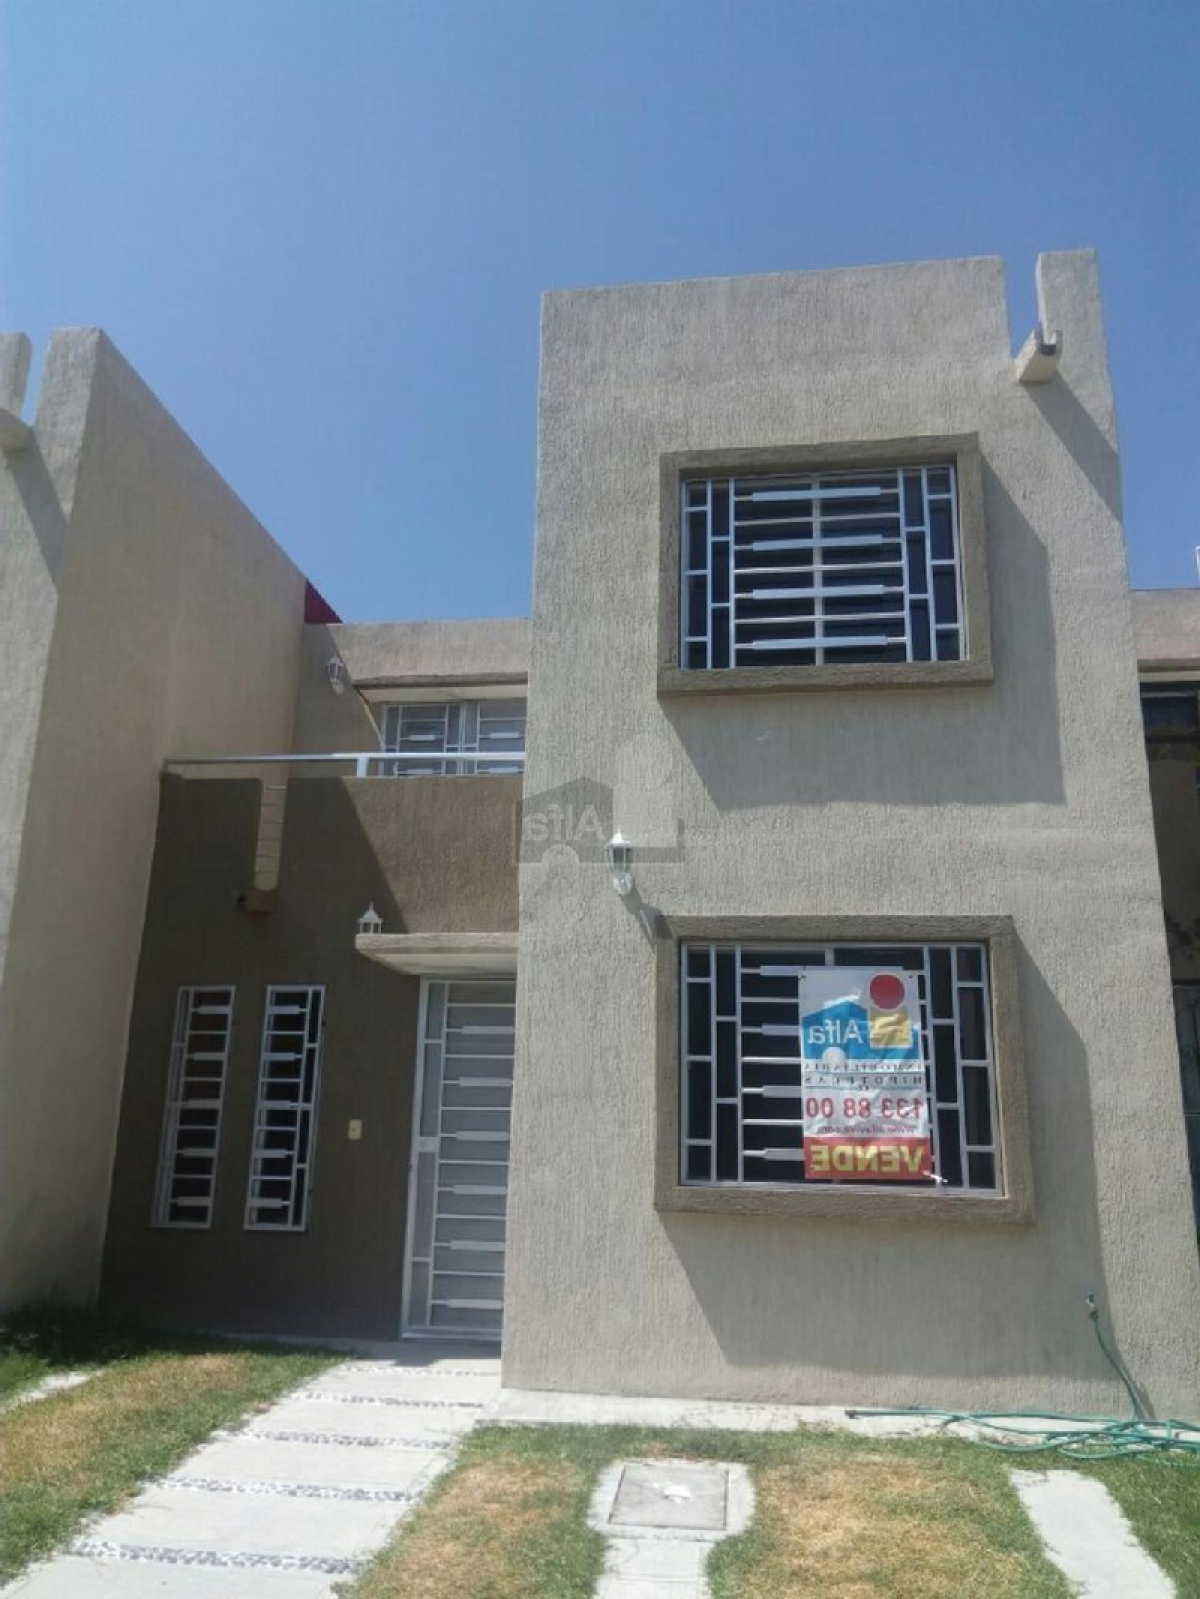 Tepic, Nayarit, Nayarit, Mexico | Homes For Sale at GLOBAL LISTINGS